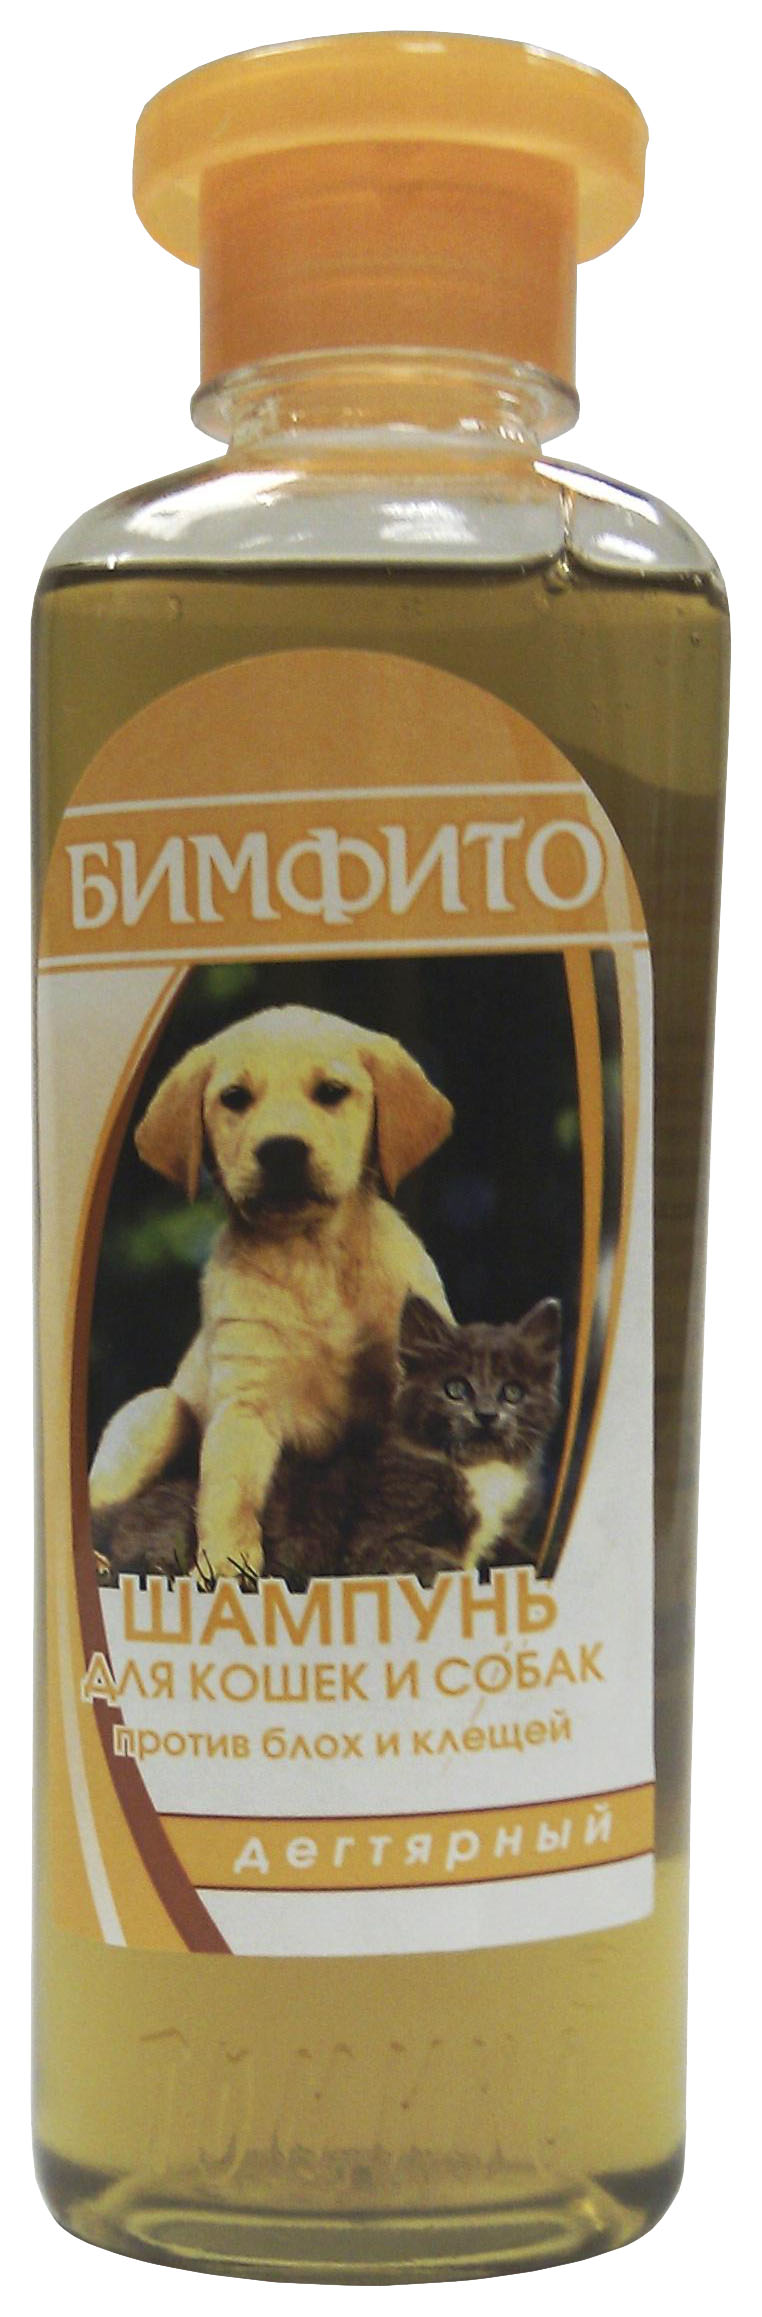 фото Шампунь для собак и кошек томикс бимфито против блох и клещей, дегтярный, 250 мл